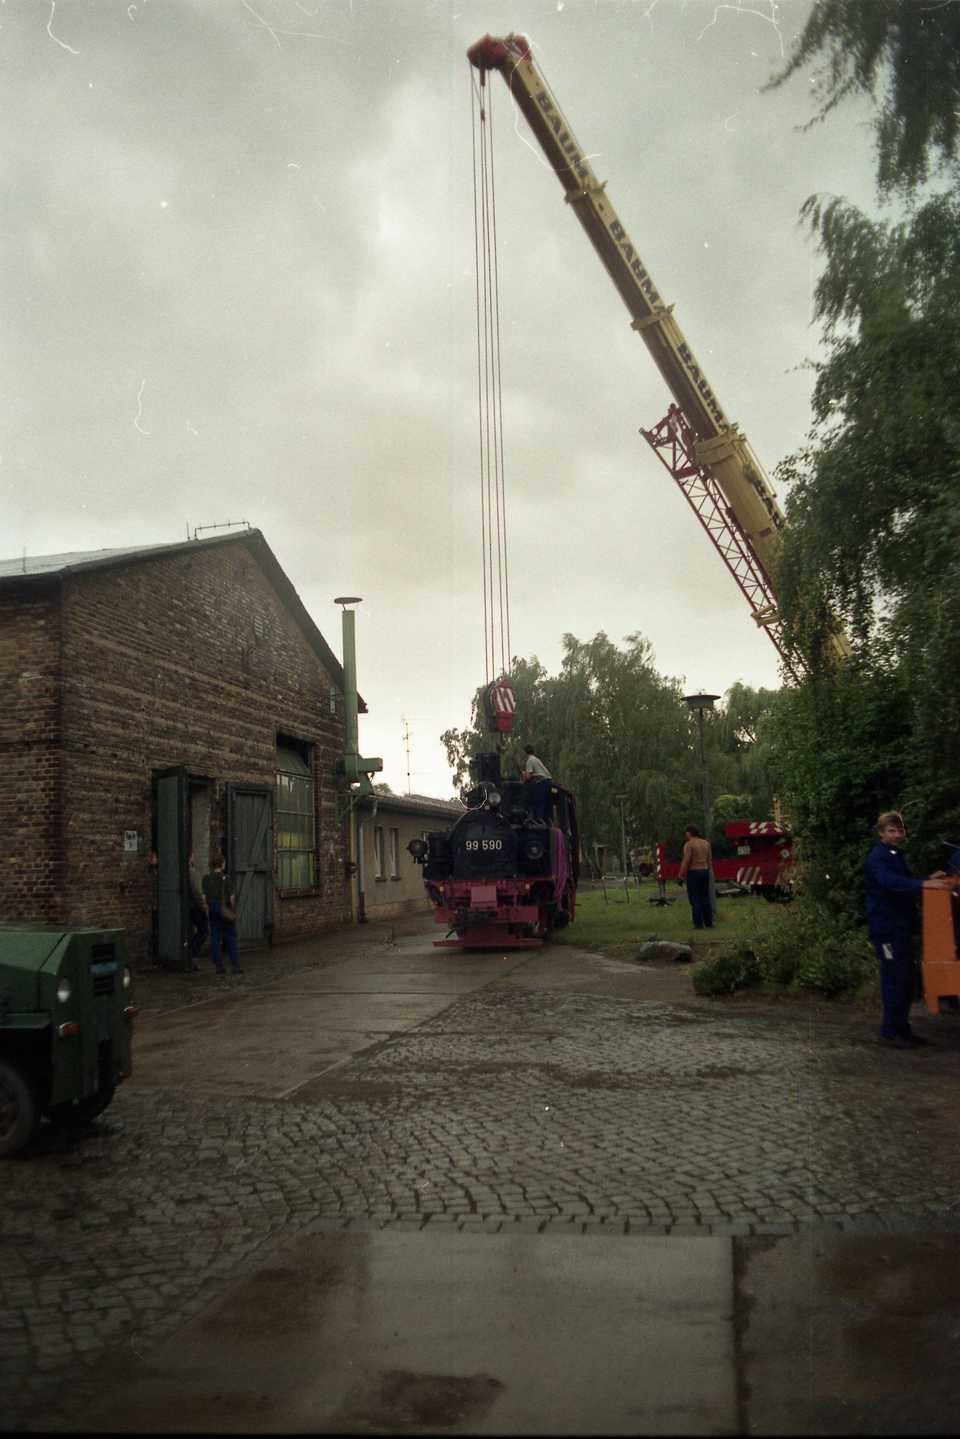 13.08.1992. Erster Schritt für die Lok - die halb auf dem Rasen halb auf dem Weg hier doch etwas ungewöhnlich wirkt. Foto: Jörg Müller